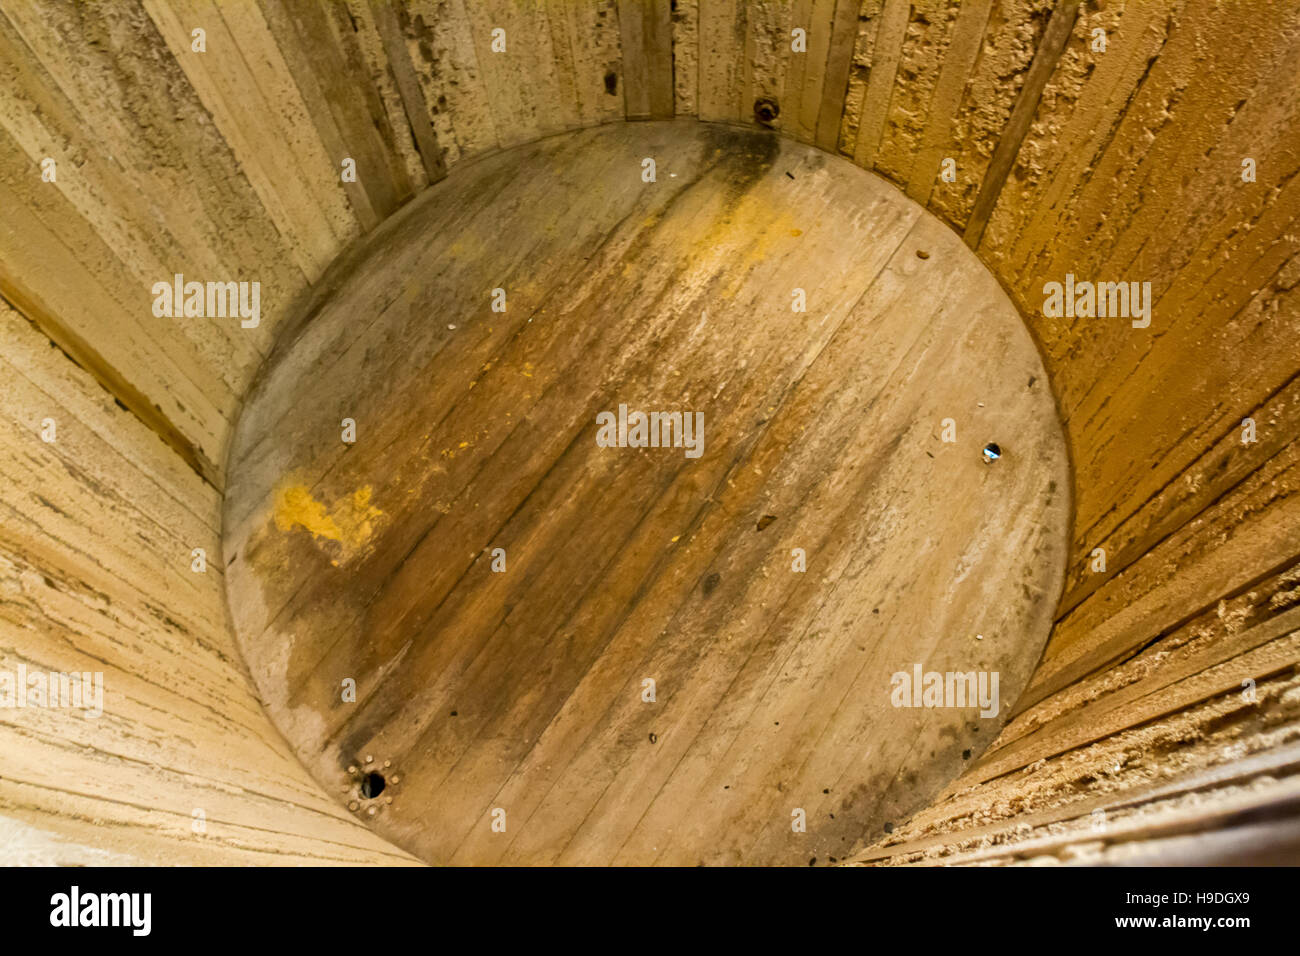 Interno del vuoto in legno serbatoio di fermentazione in distilleria di Borbone. Foto Stock